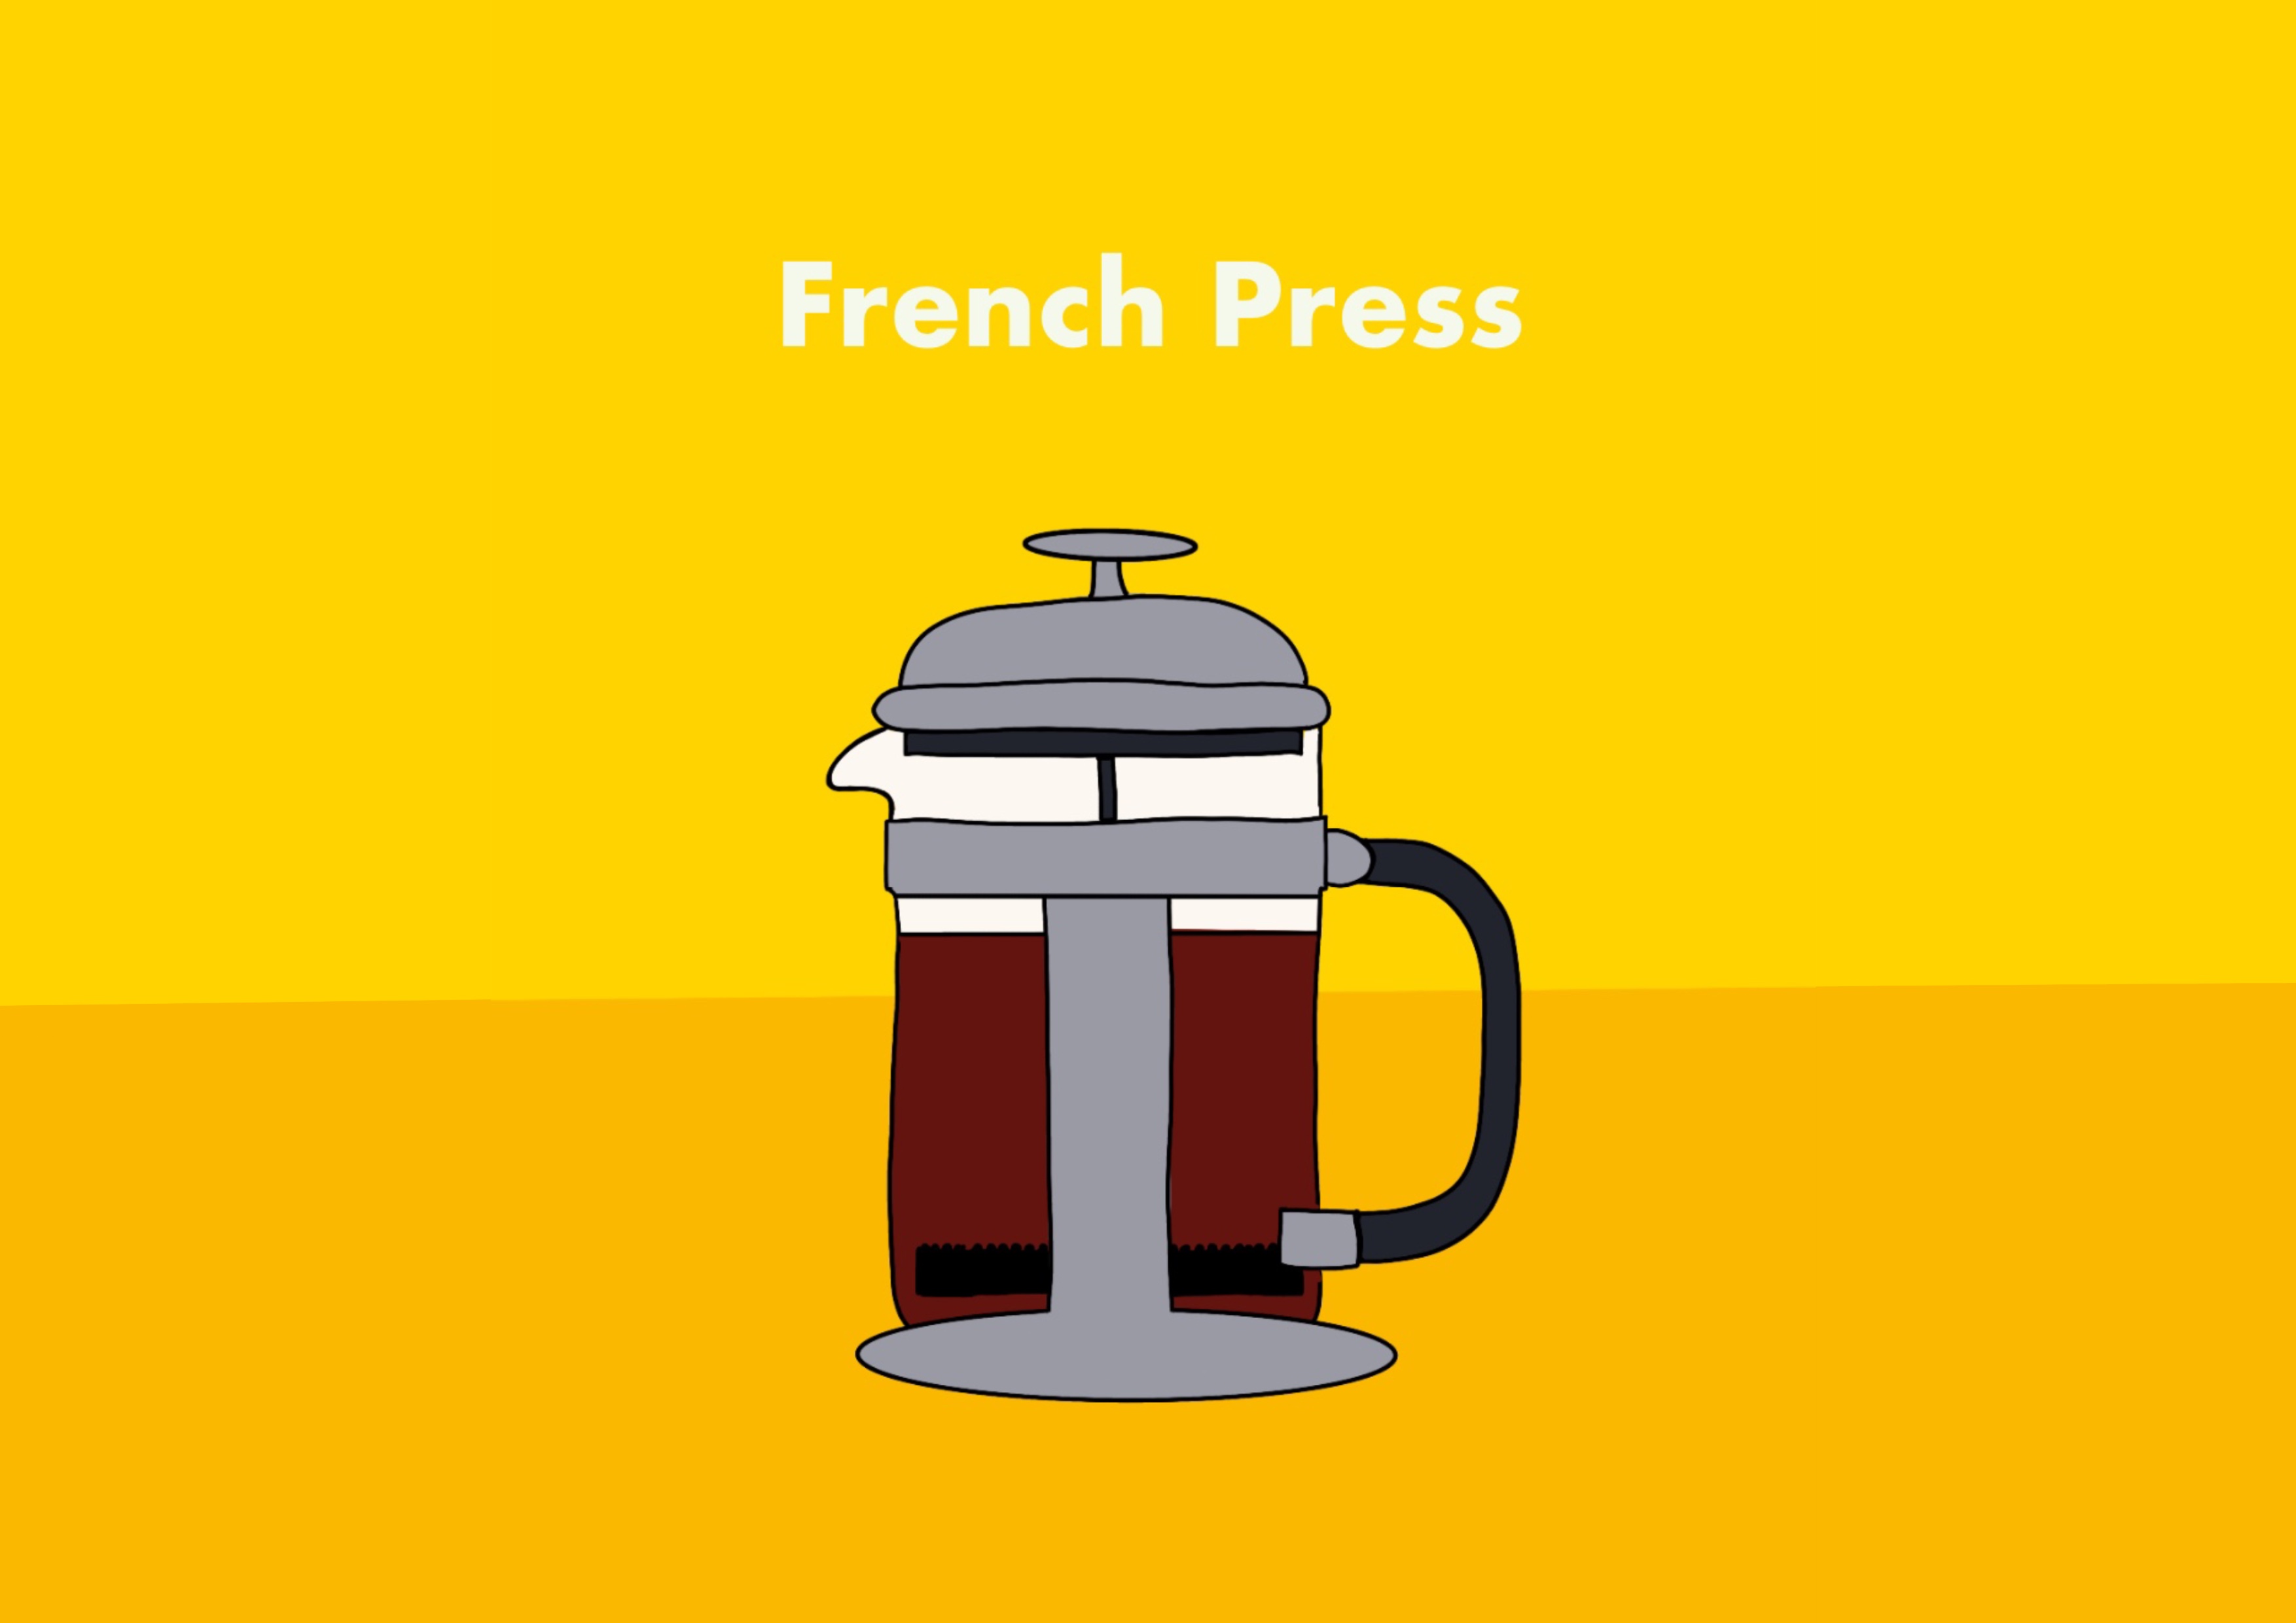 Kaffeezubereitung mit der French Press